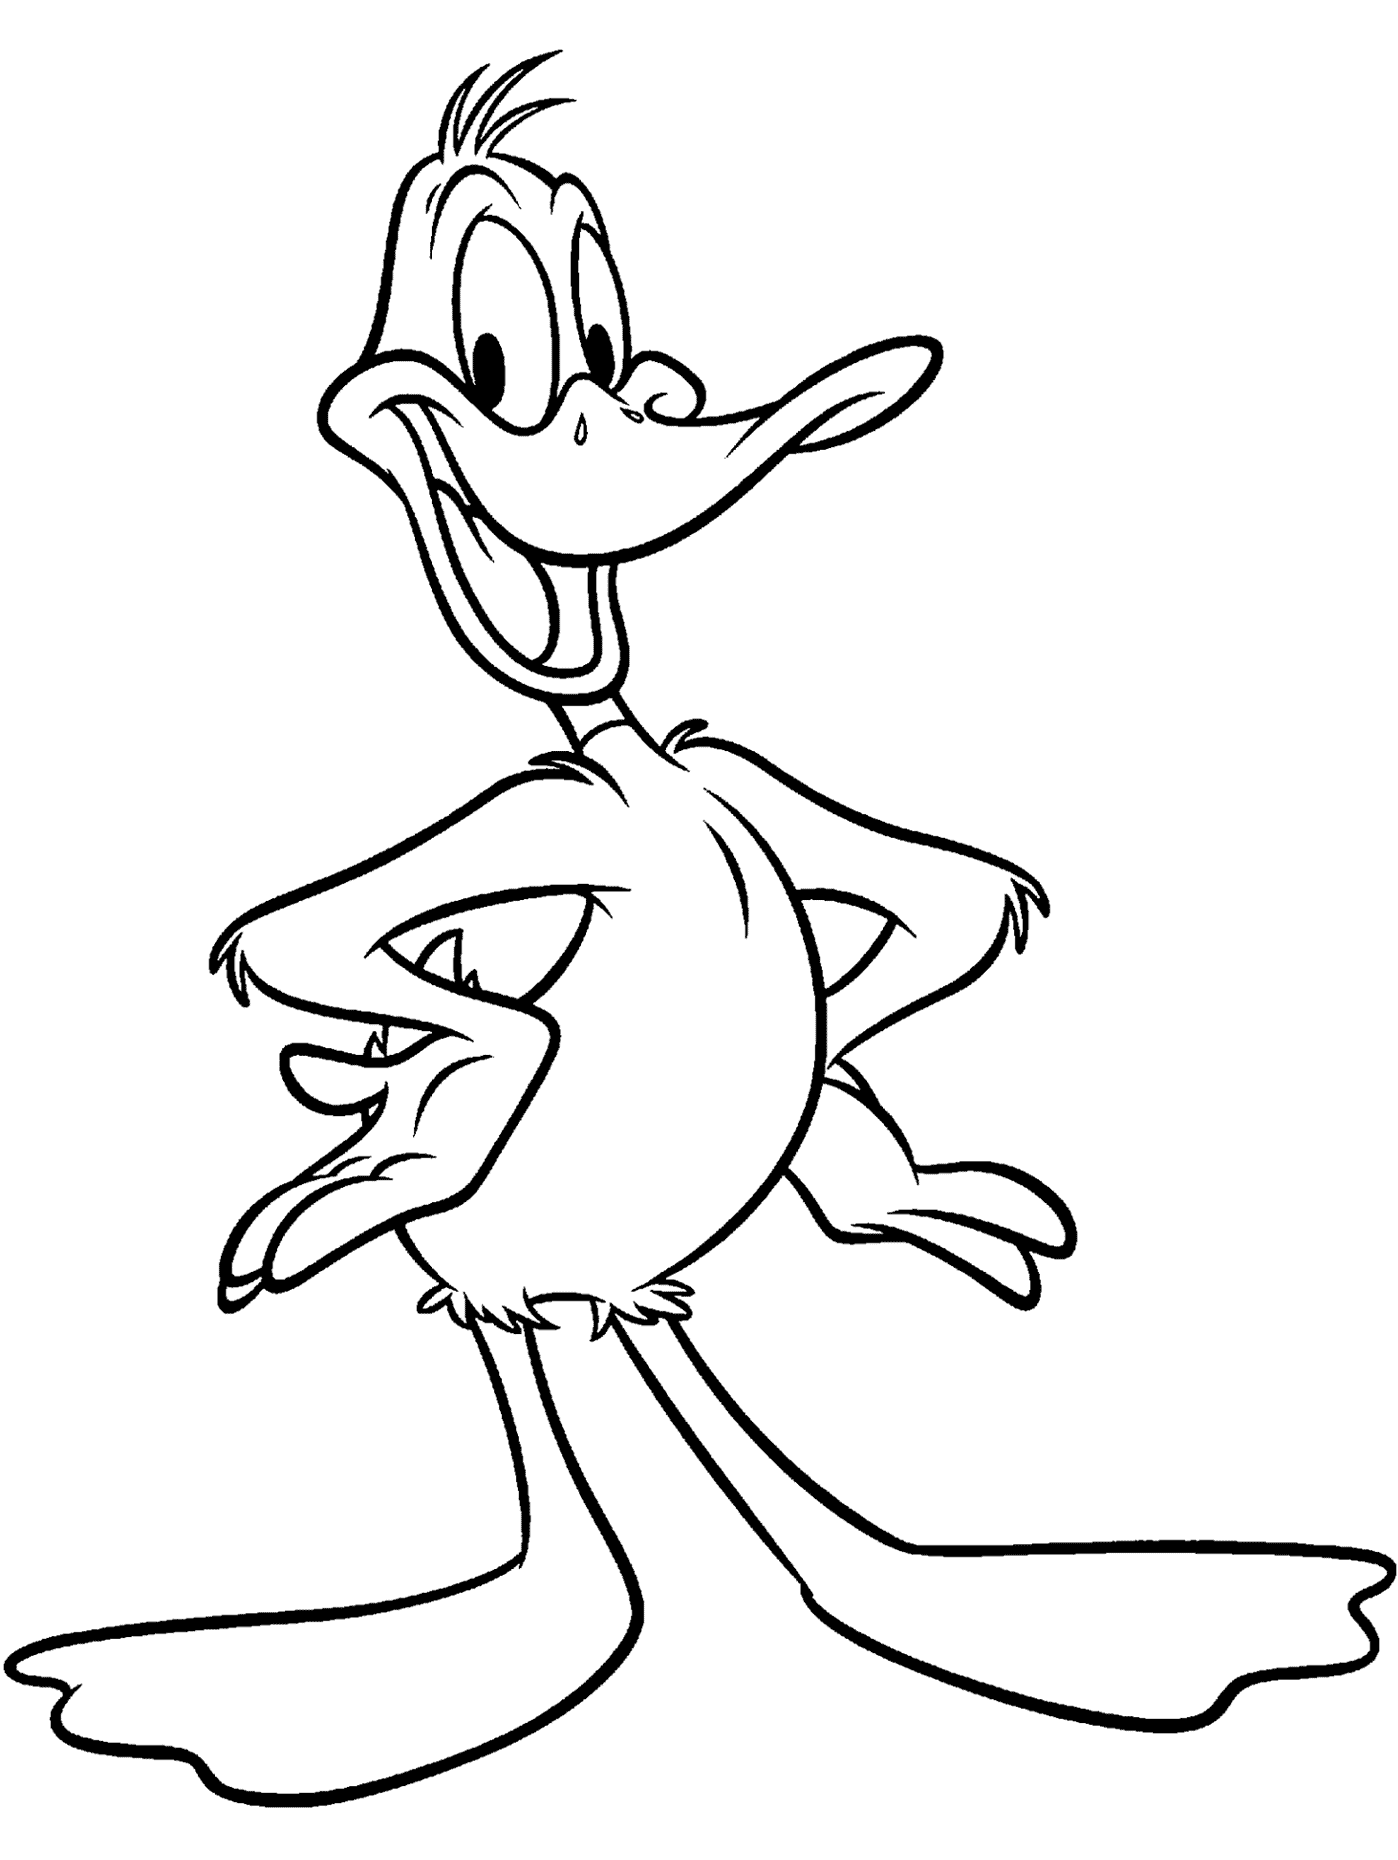 Bugs Bunny #26344 (Dibujos animados) – Colorear dibujos gratis